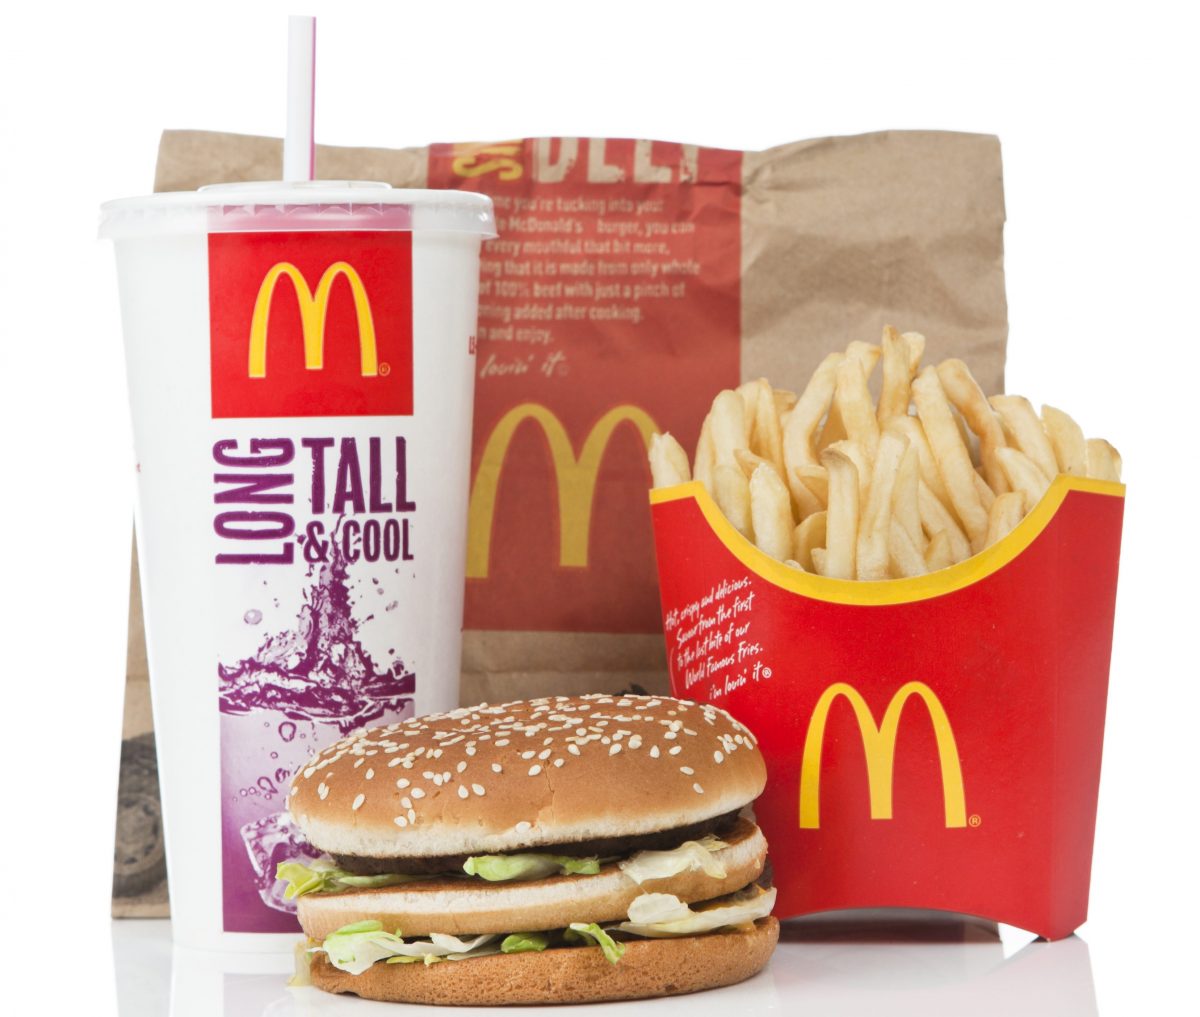 McDonald's Big Mac meal